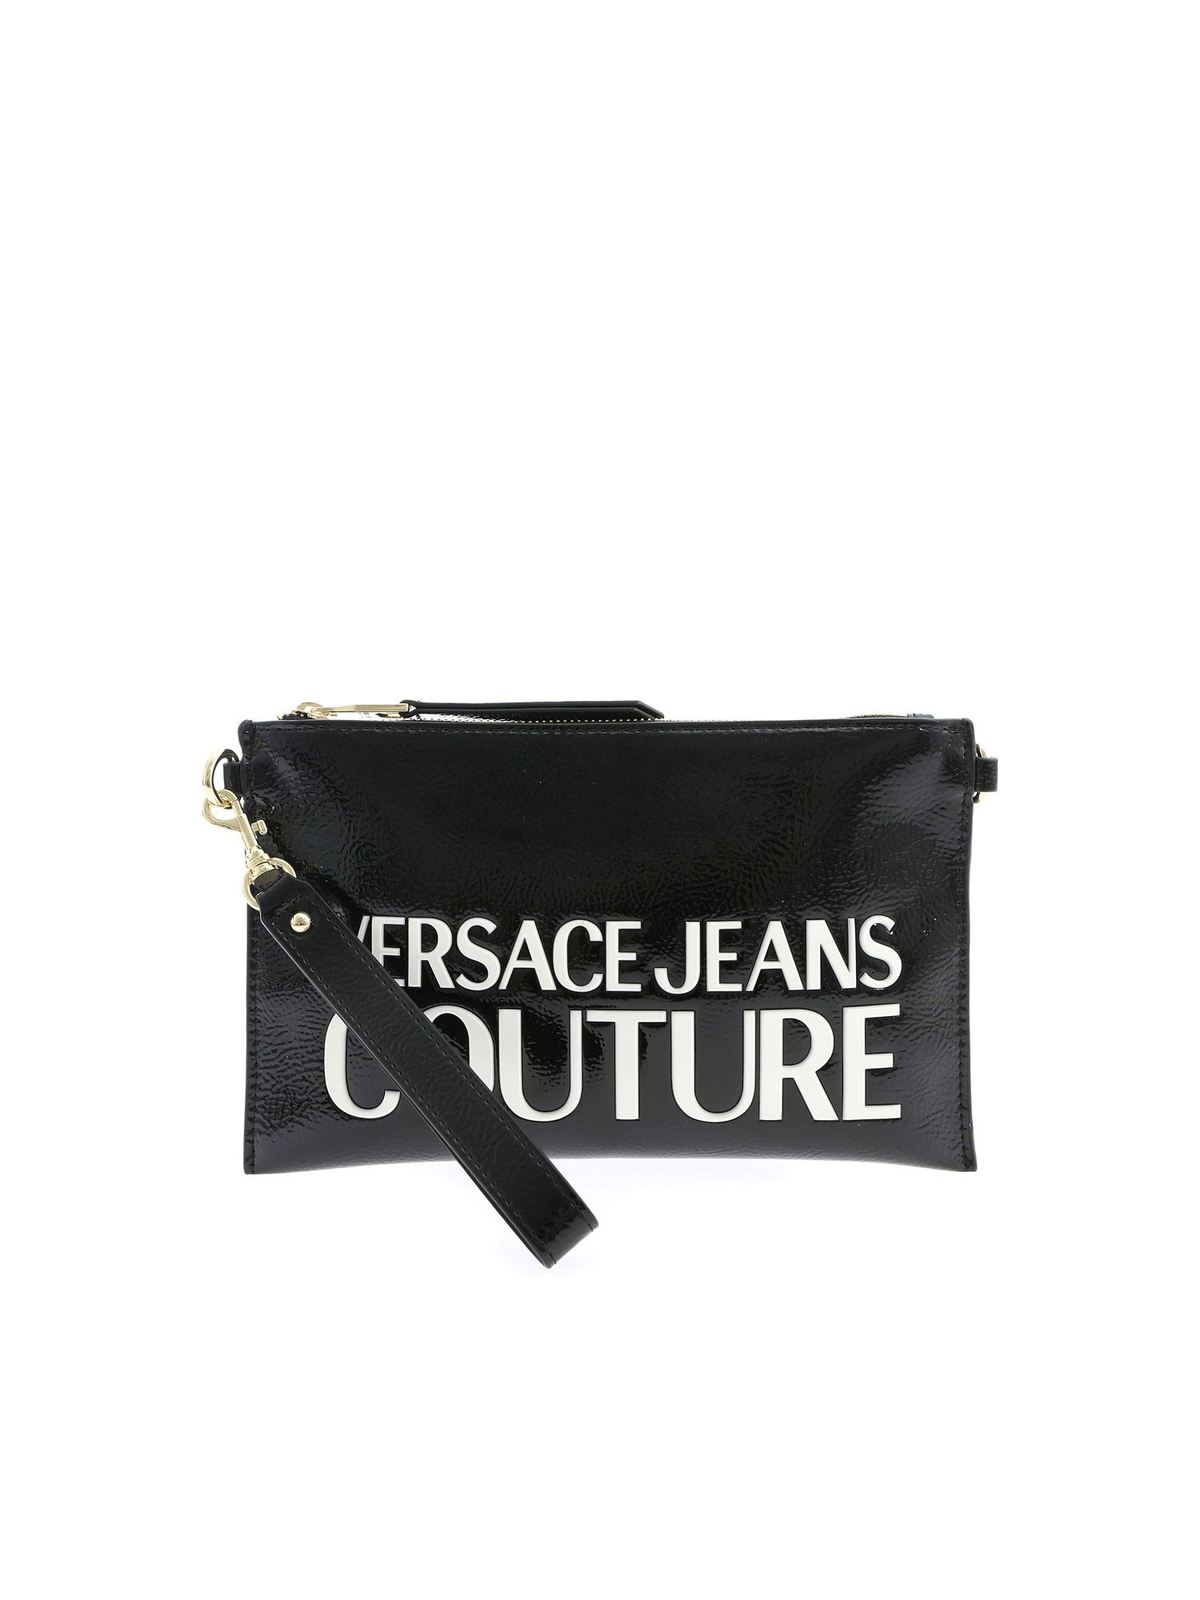 versace jeans bag sale